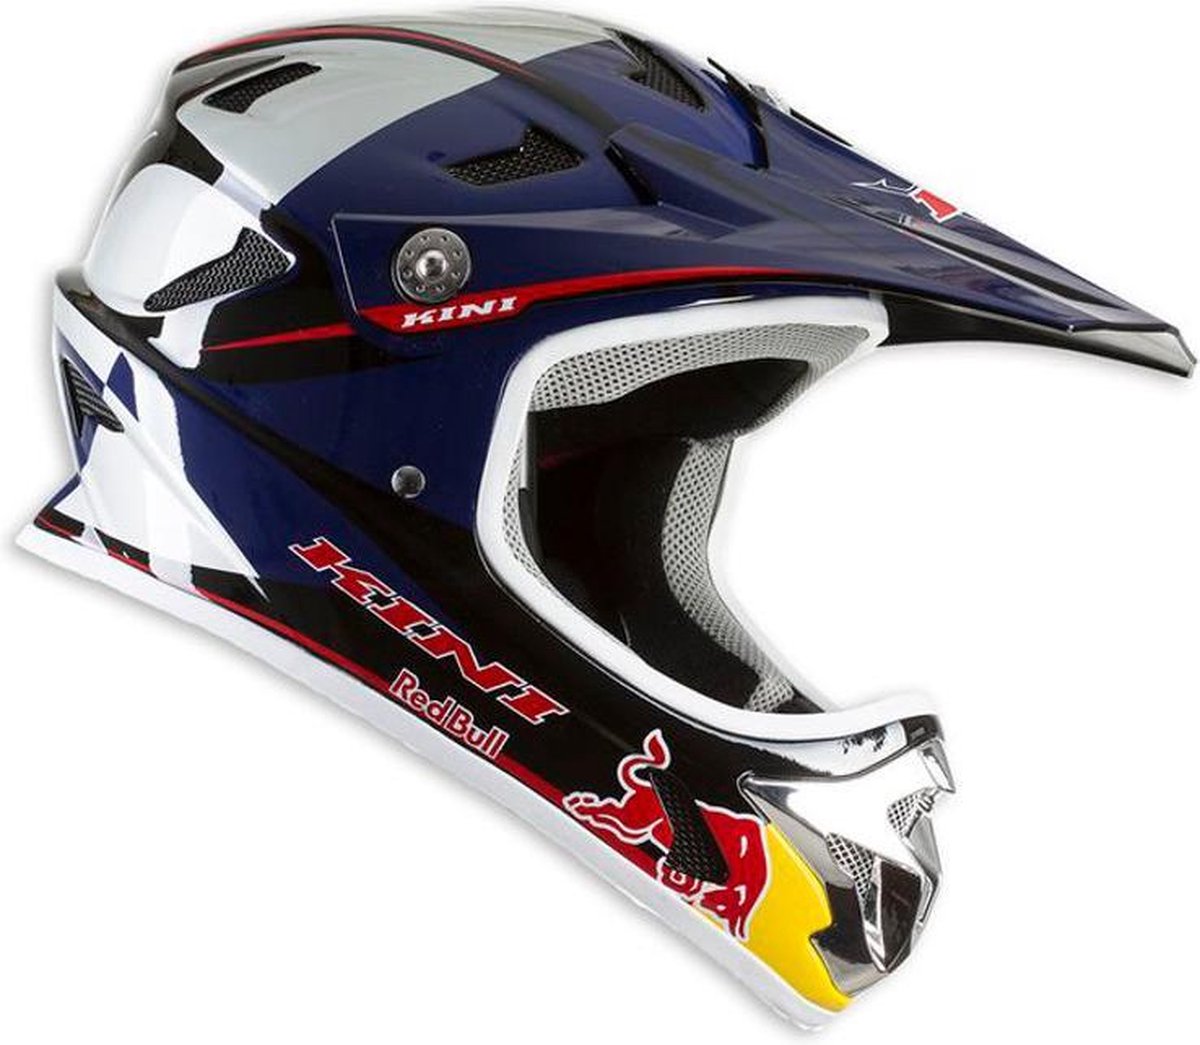 bodem formeel Lot Kini Red Bull MTB Downhill helm blauw Hoofdomtrek XS/54 cm | bol.com